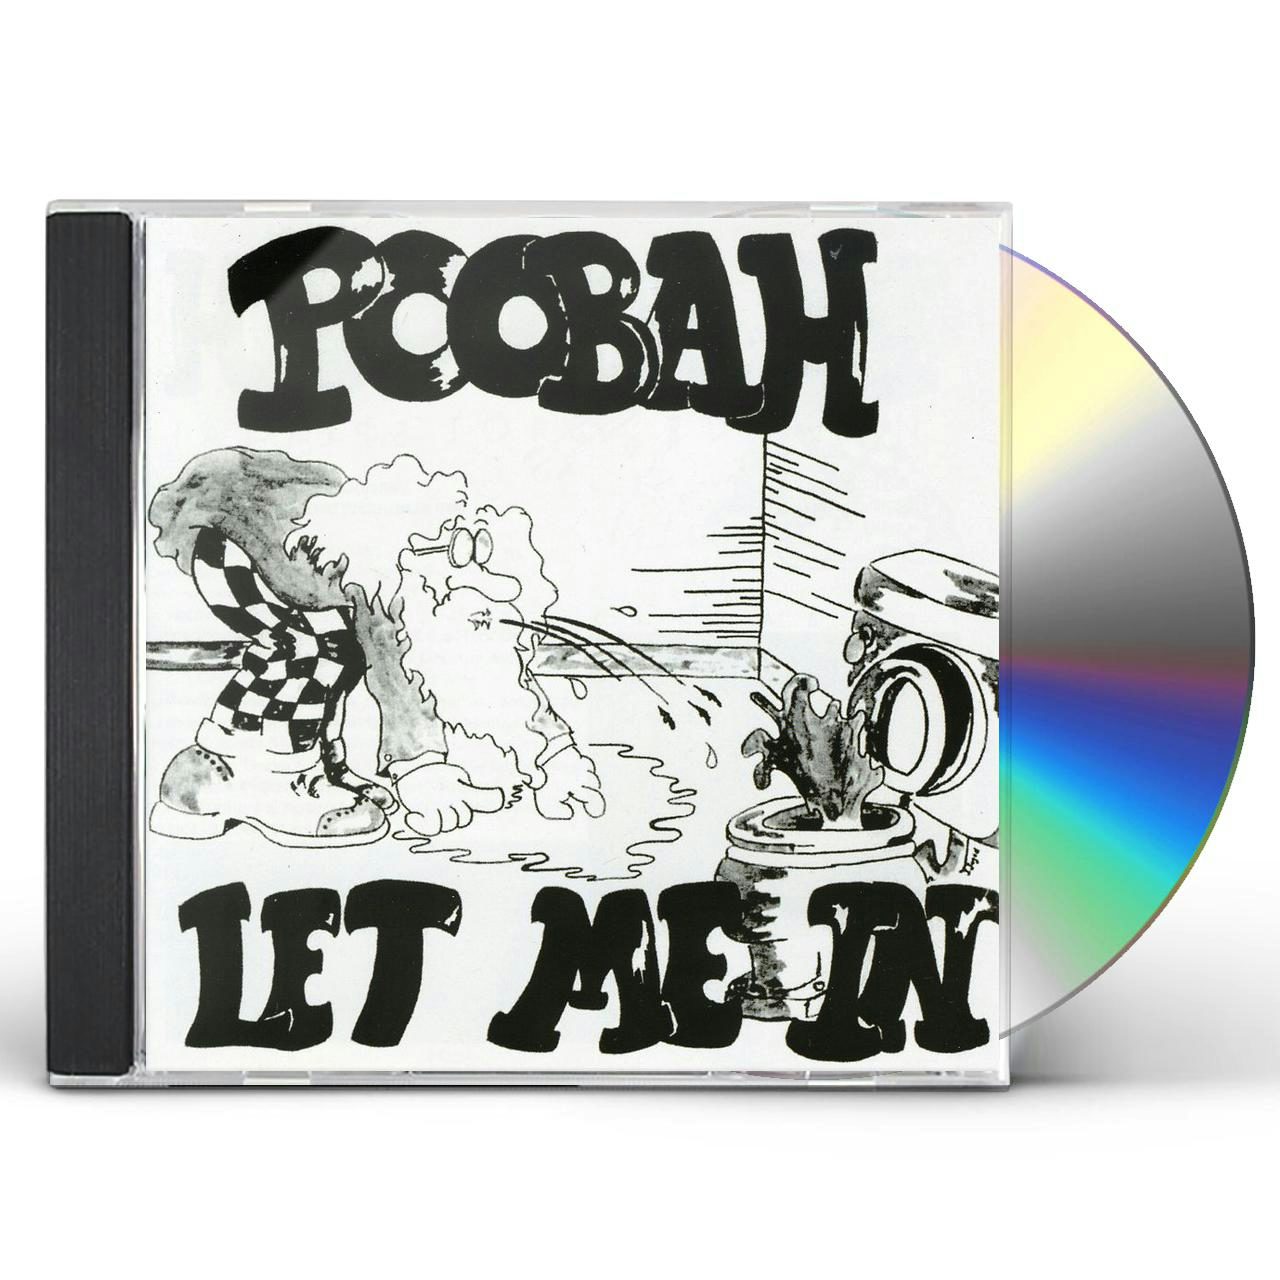 Let Me In Vinyl Record - Poobah